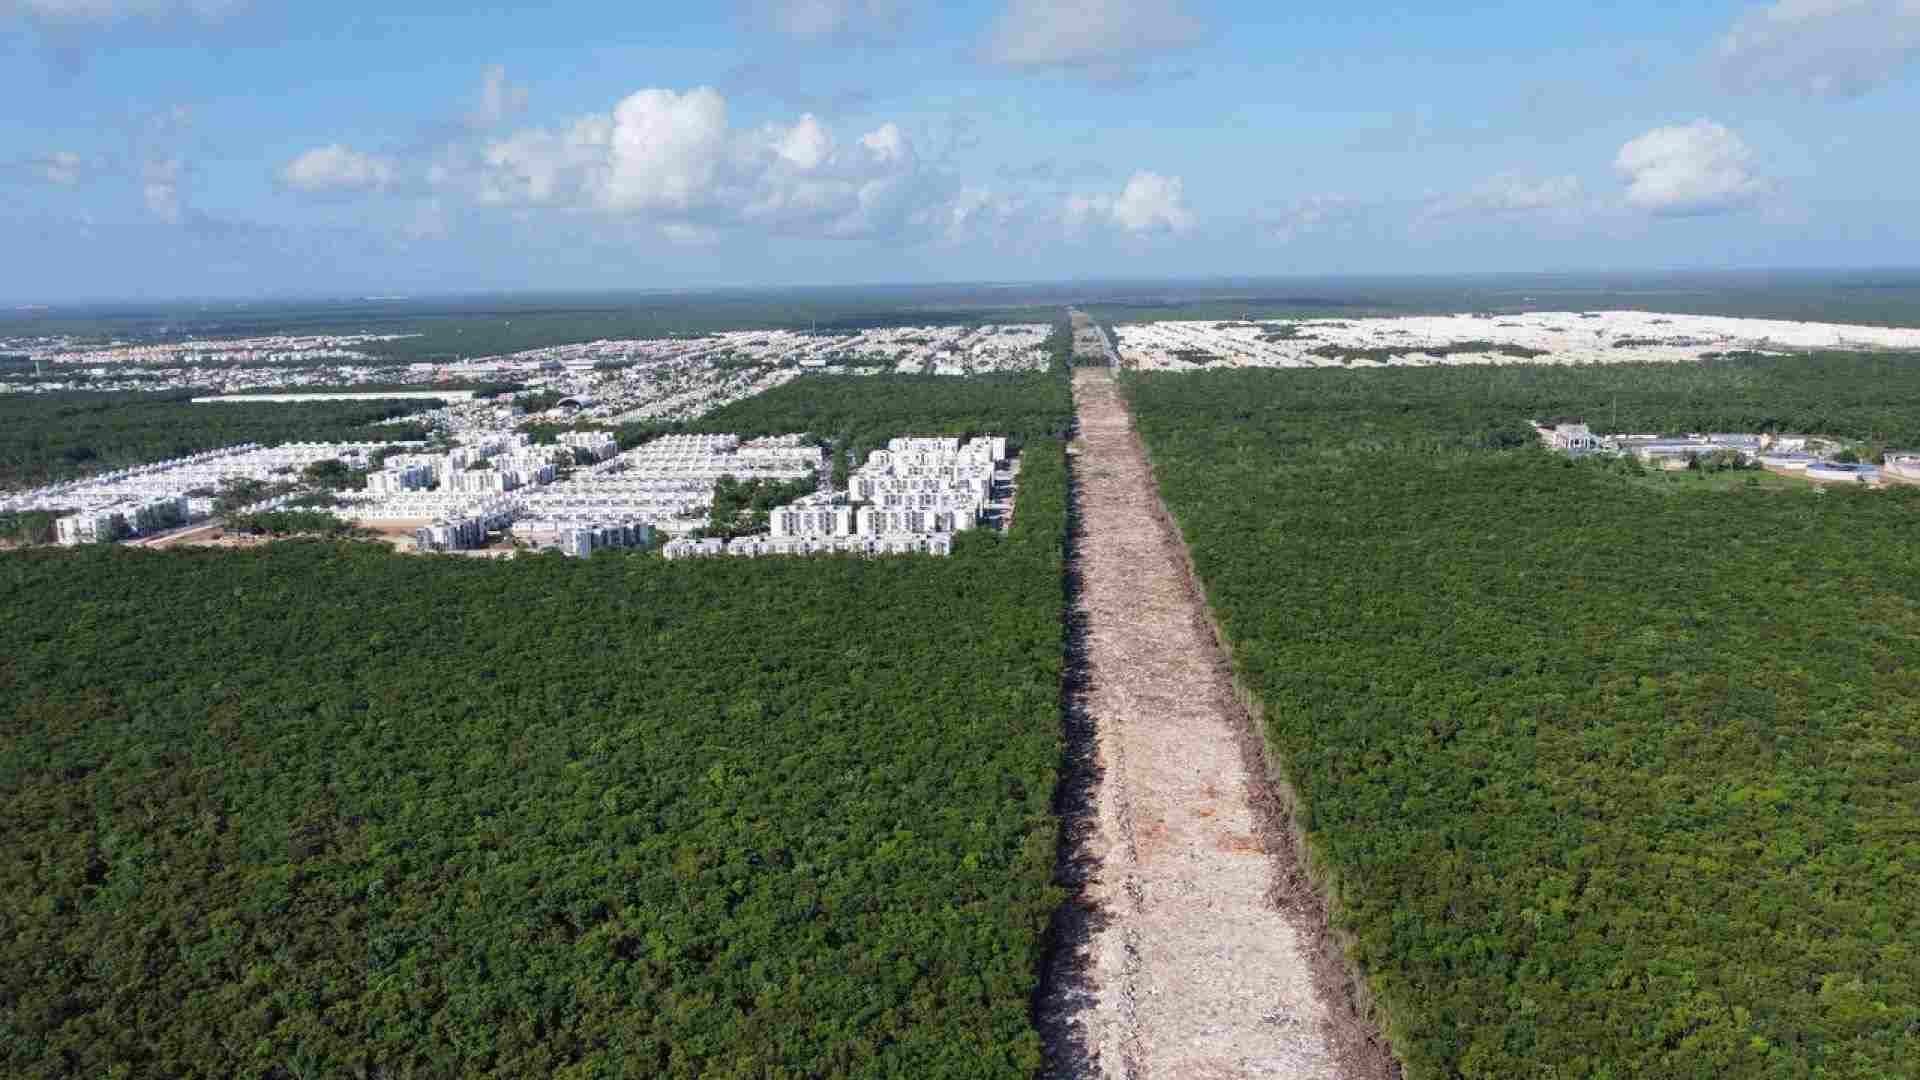 El Tramo 5 del Tren Maya ha provocado una disputa jurídica entre el gobierno y ambientalistas